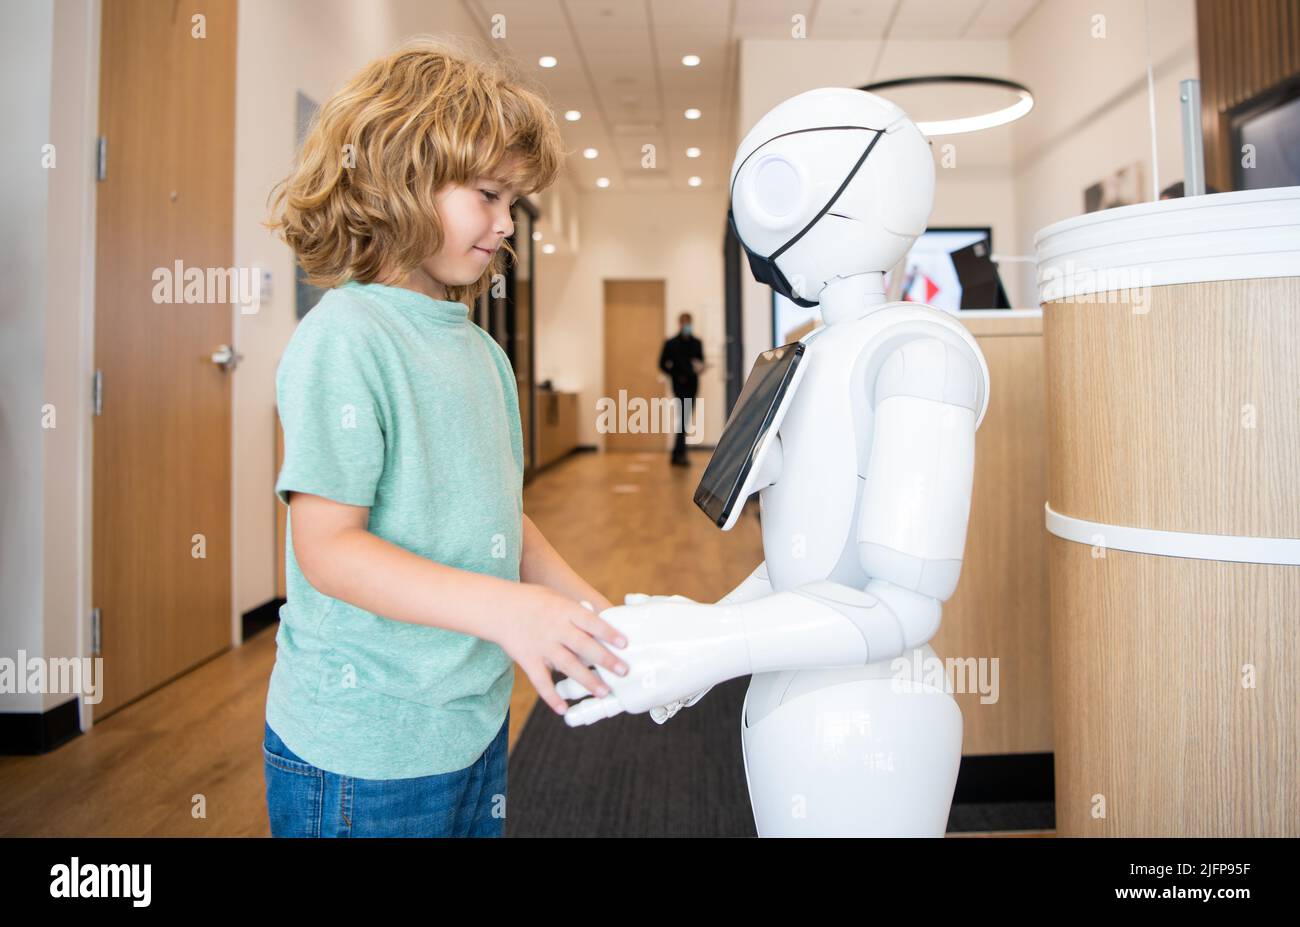 l'enfant interagit avec le robot en tant que technologie innovante, communication Banque D'Images